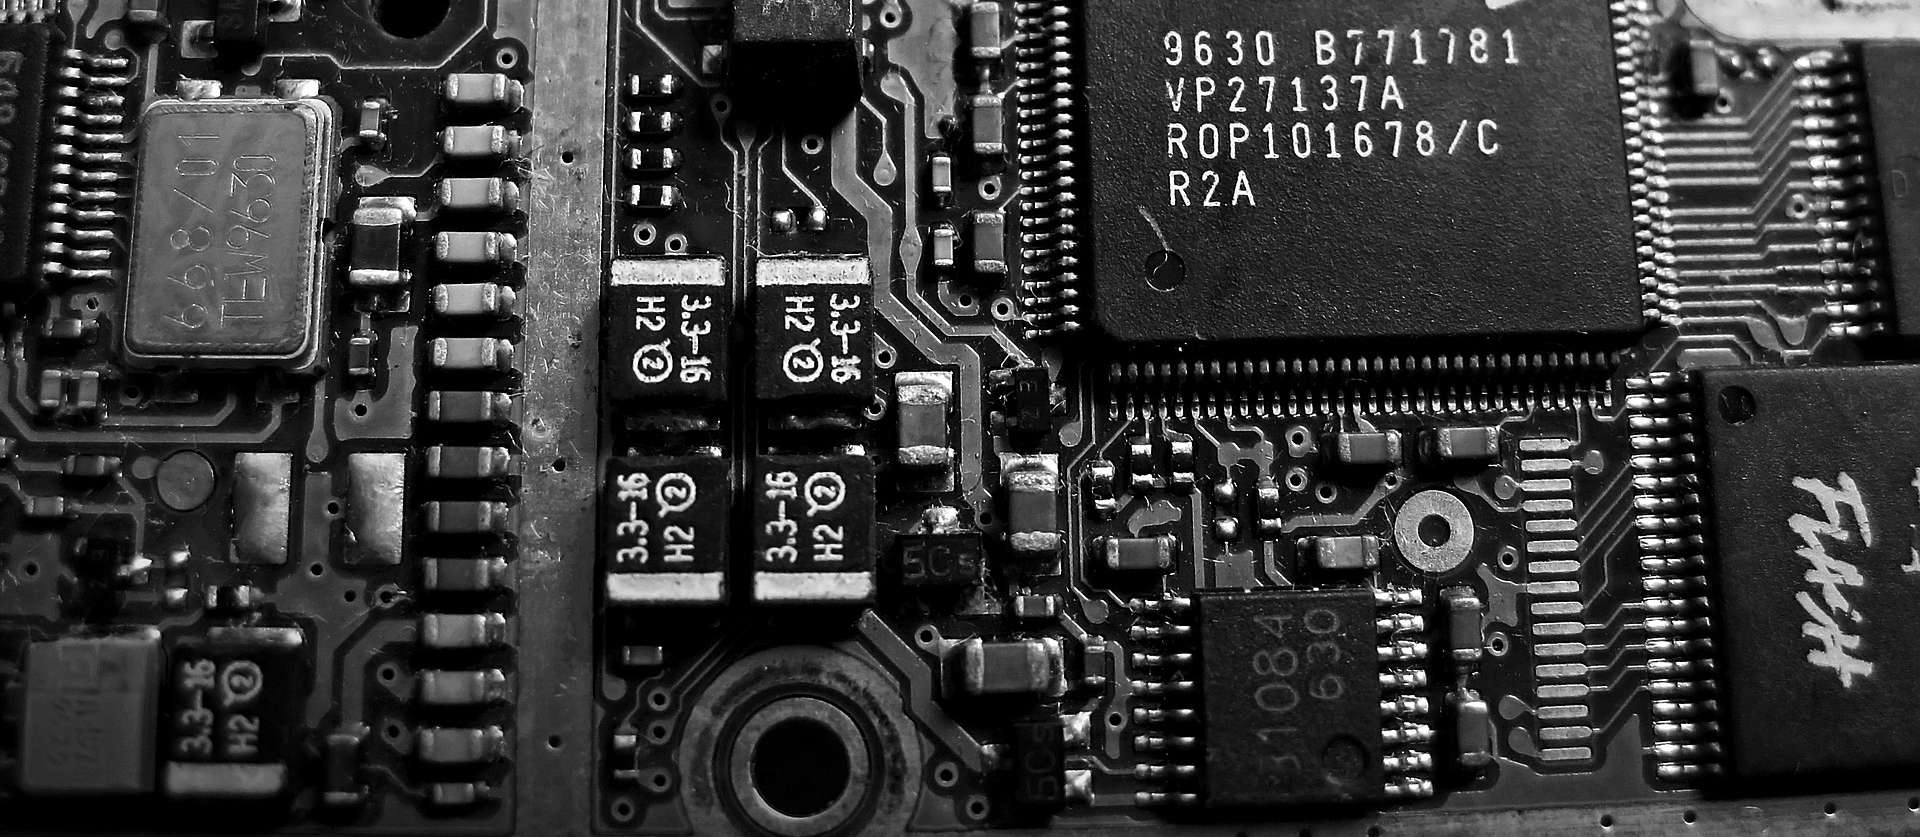 circuit board cpu/gpu-for mining